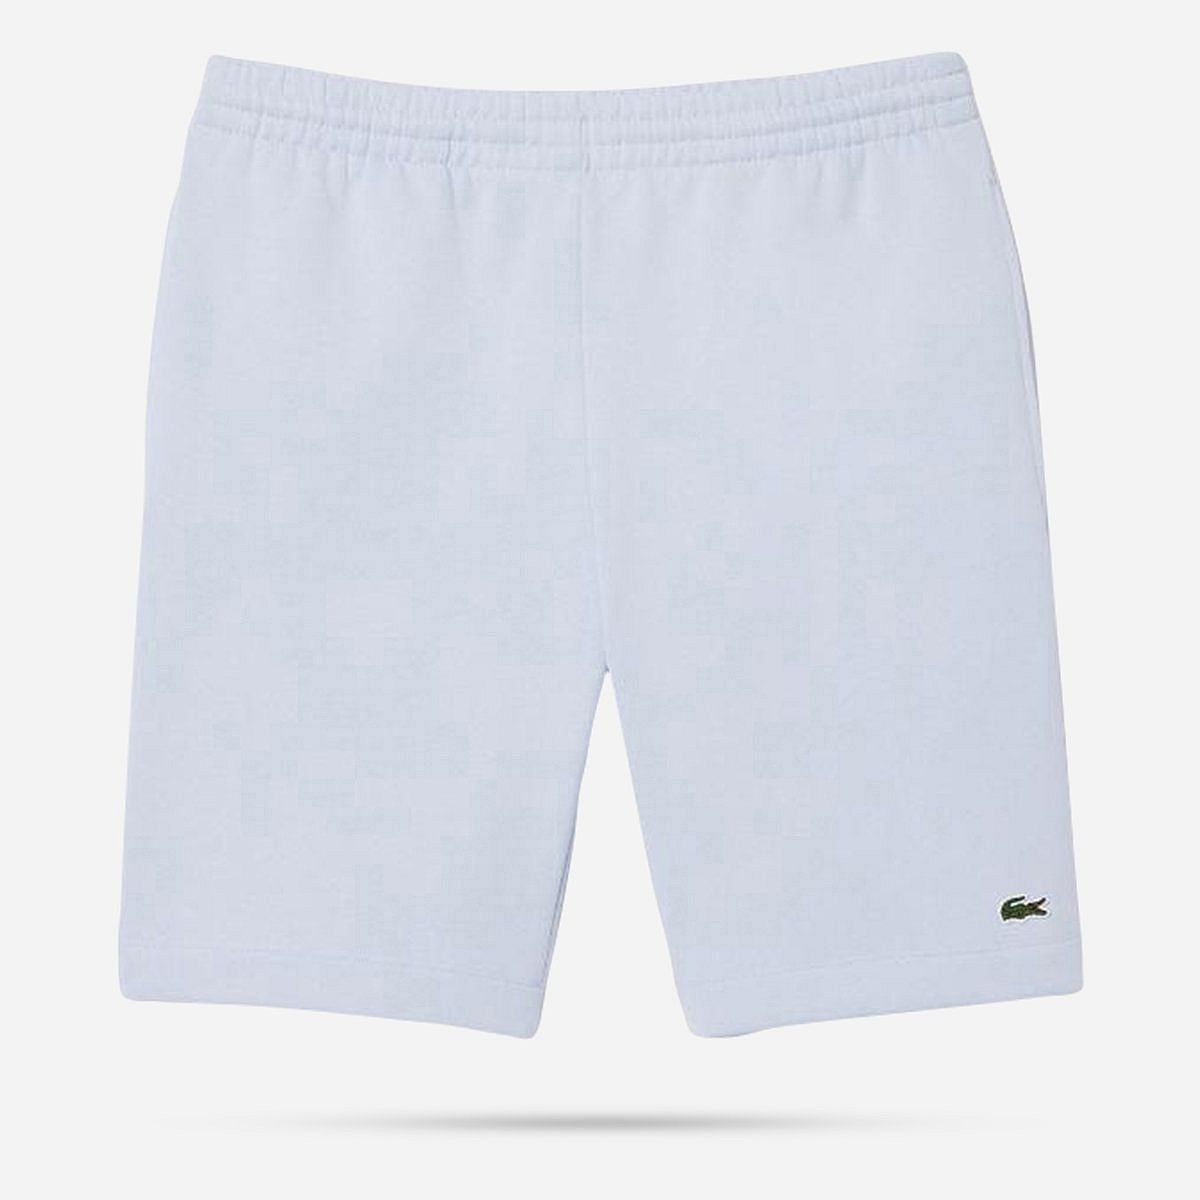 AN309107 1HG1 Men's shorts 01